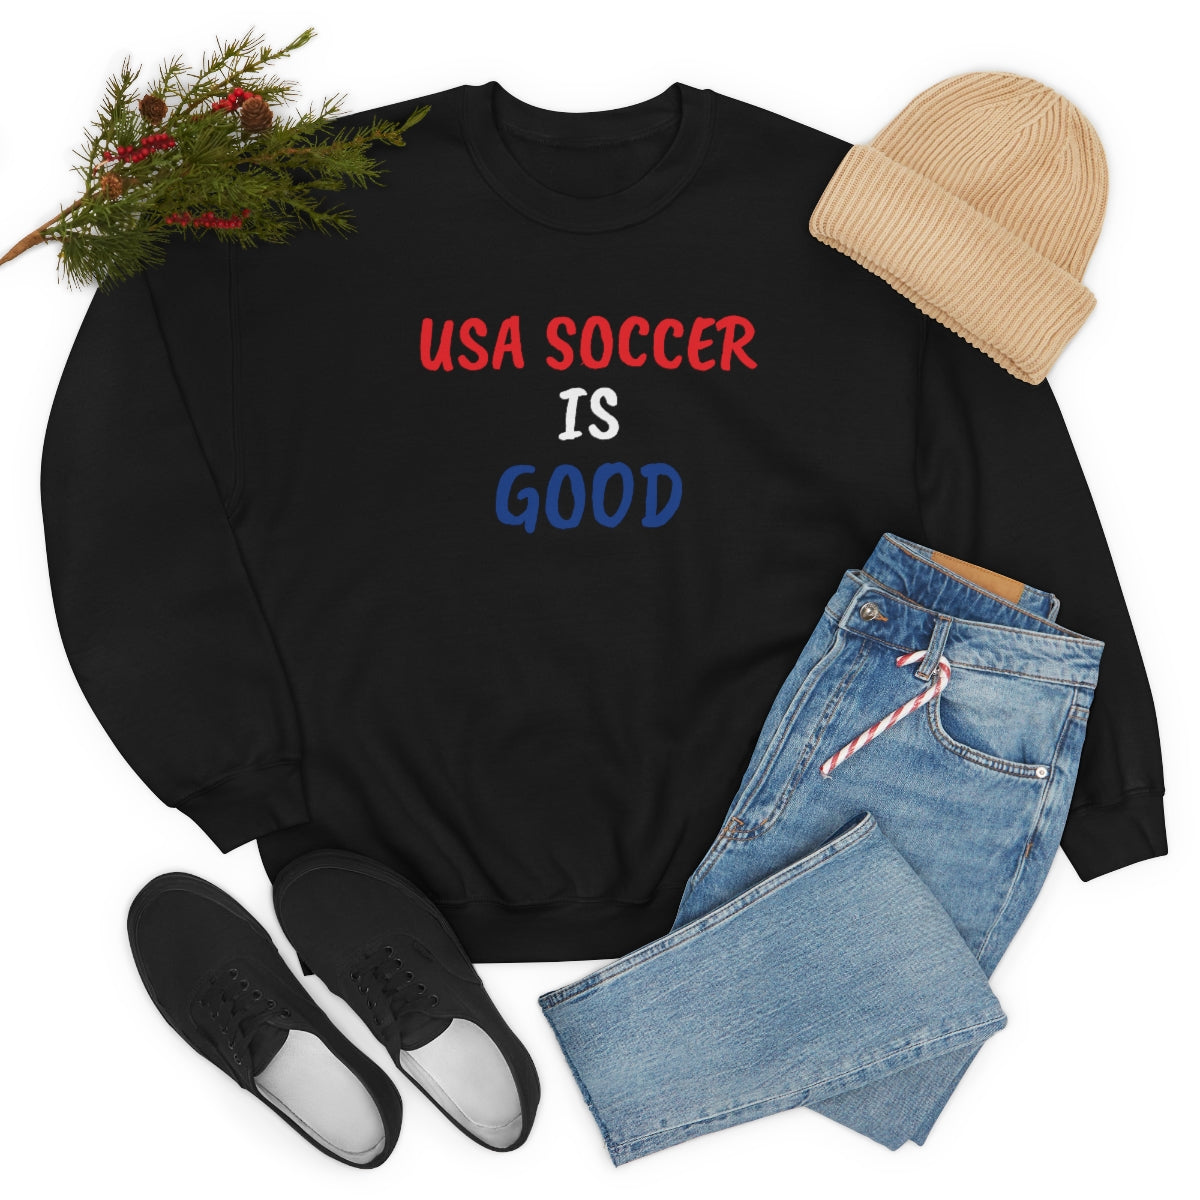 USA SOCCER IS GOOD Crewneck Sweatshirt - IsGoodBrand